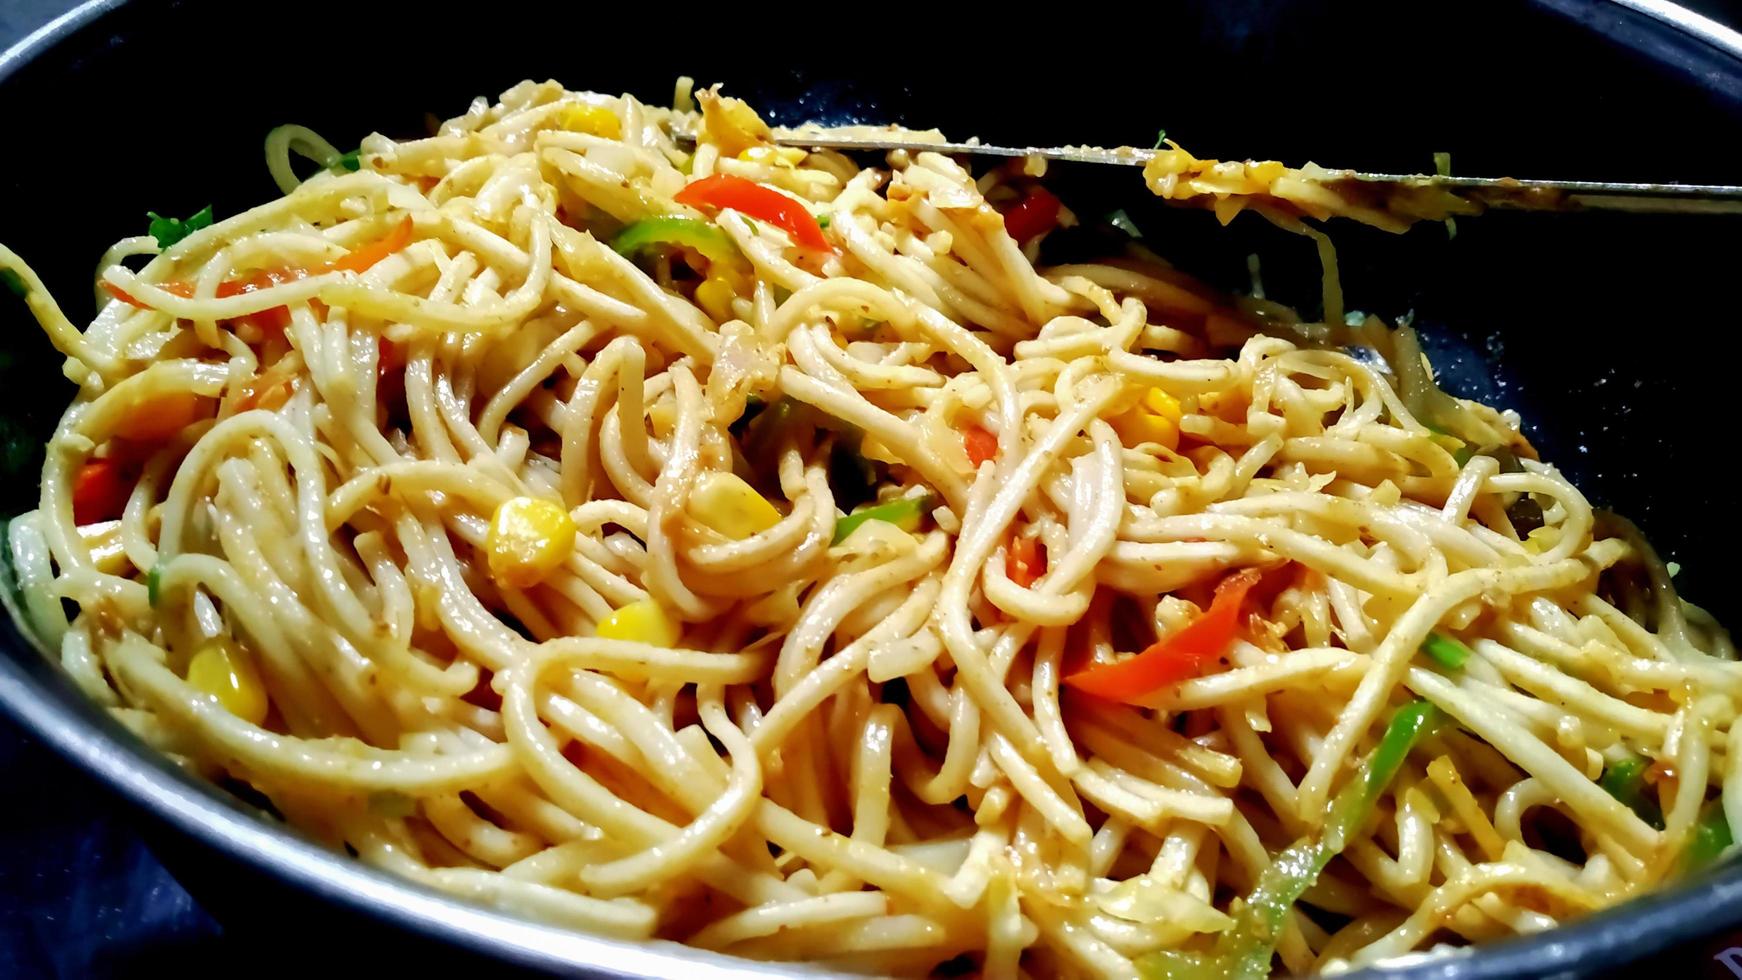 los fideos schezwan o los fideos hakka vegetales szechwan o chow mein son recetas populares de indochina, que se sirven en un tazón o plato foto